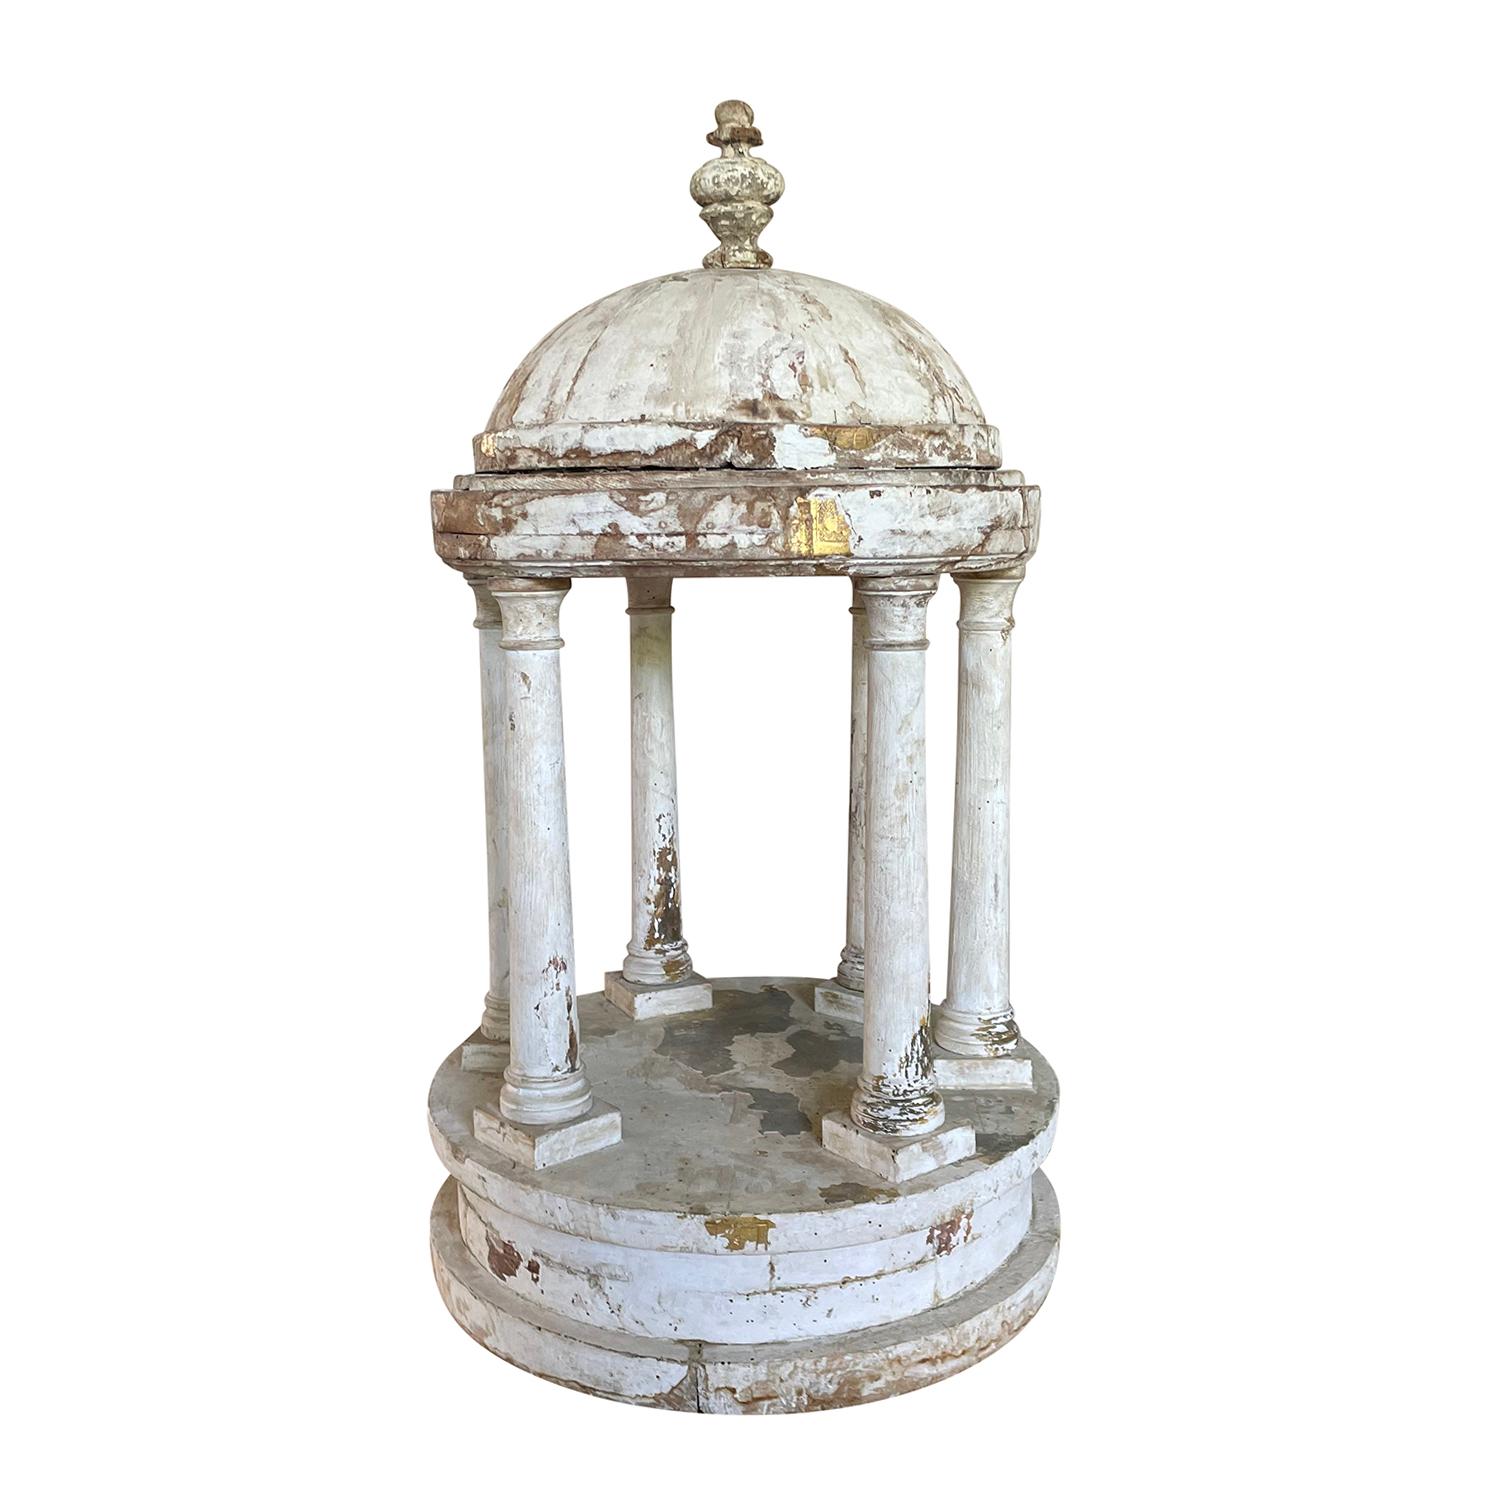 Modèle miniature antique du 19e siècle, en gris blanc, d'un belvédère de style Palladio avec un toit en dôme surmonté d'un petit fleuron en forme d'urne, de colonnes et d'une base circulaire. Cette pièce décorative détaillée est fabriquée à la main